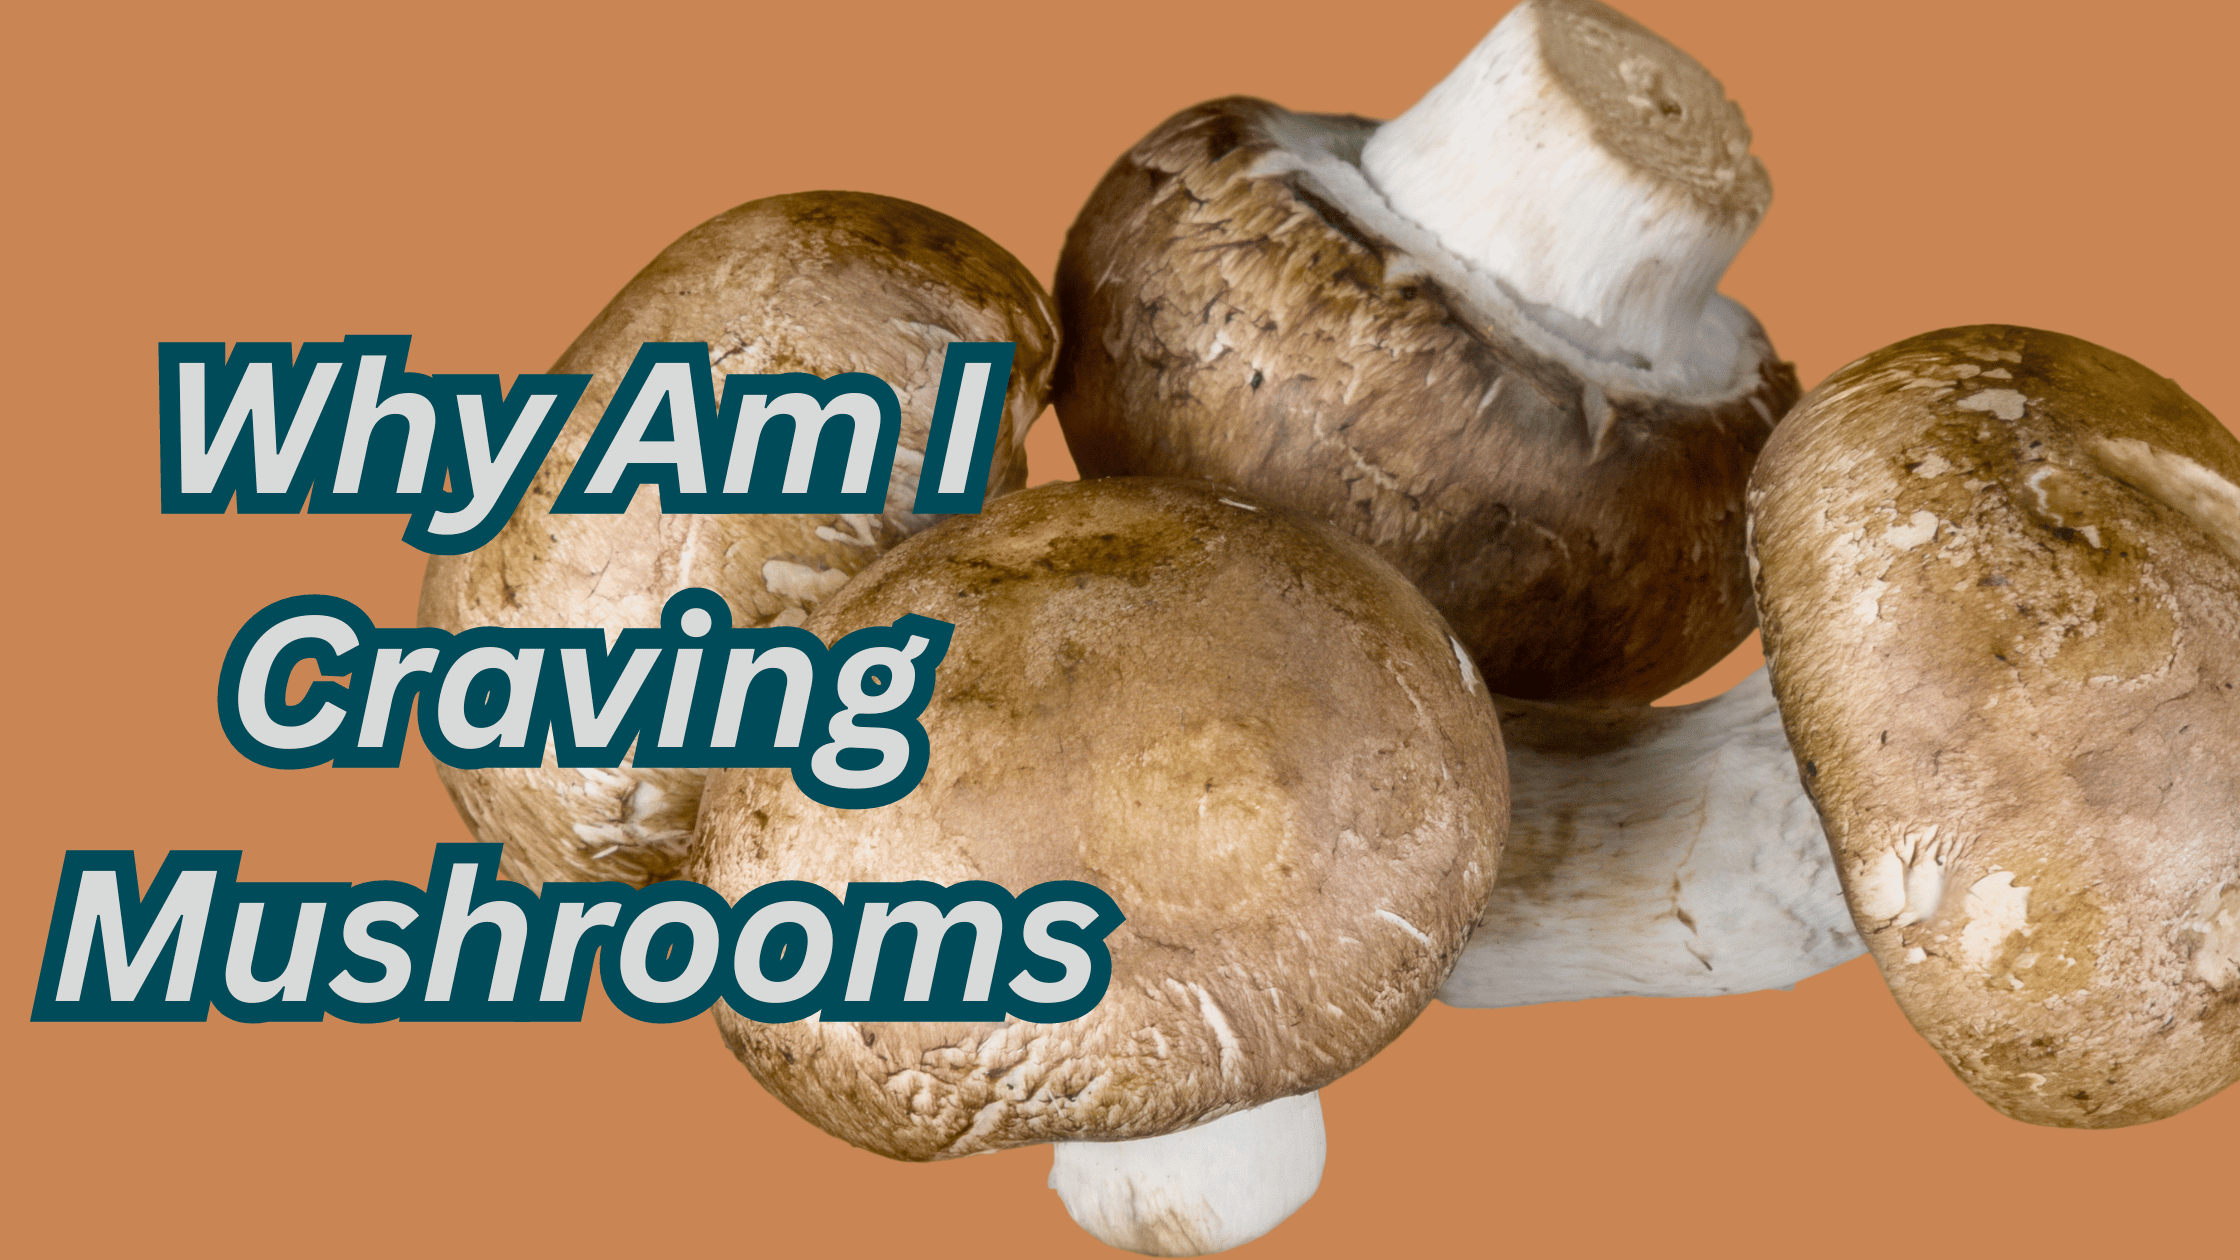 Why Am I Craving Mushrooms? [Reasons]